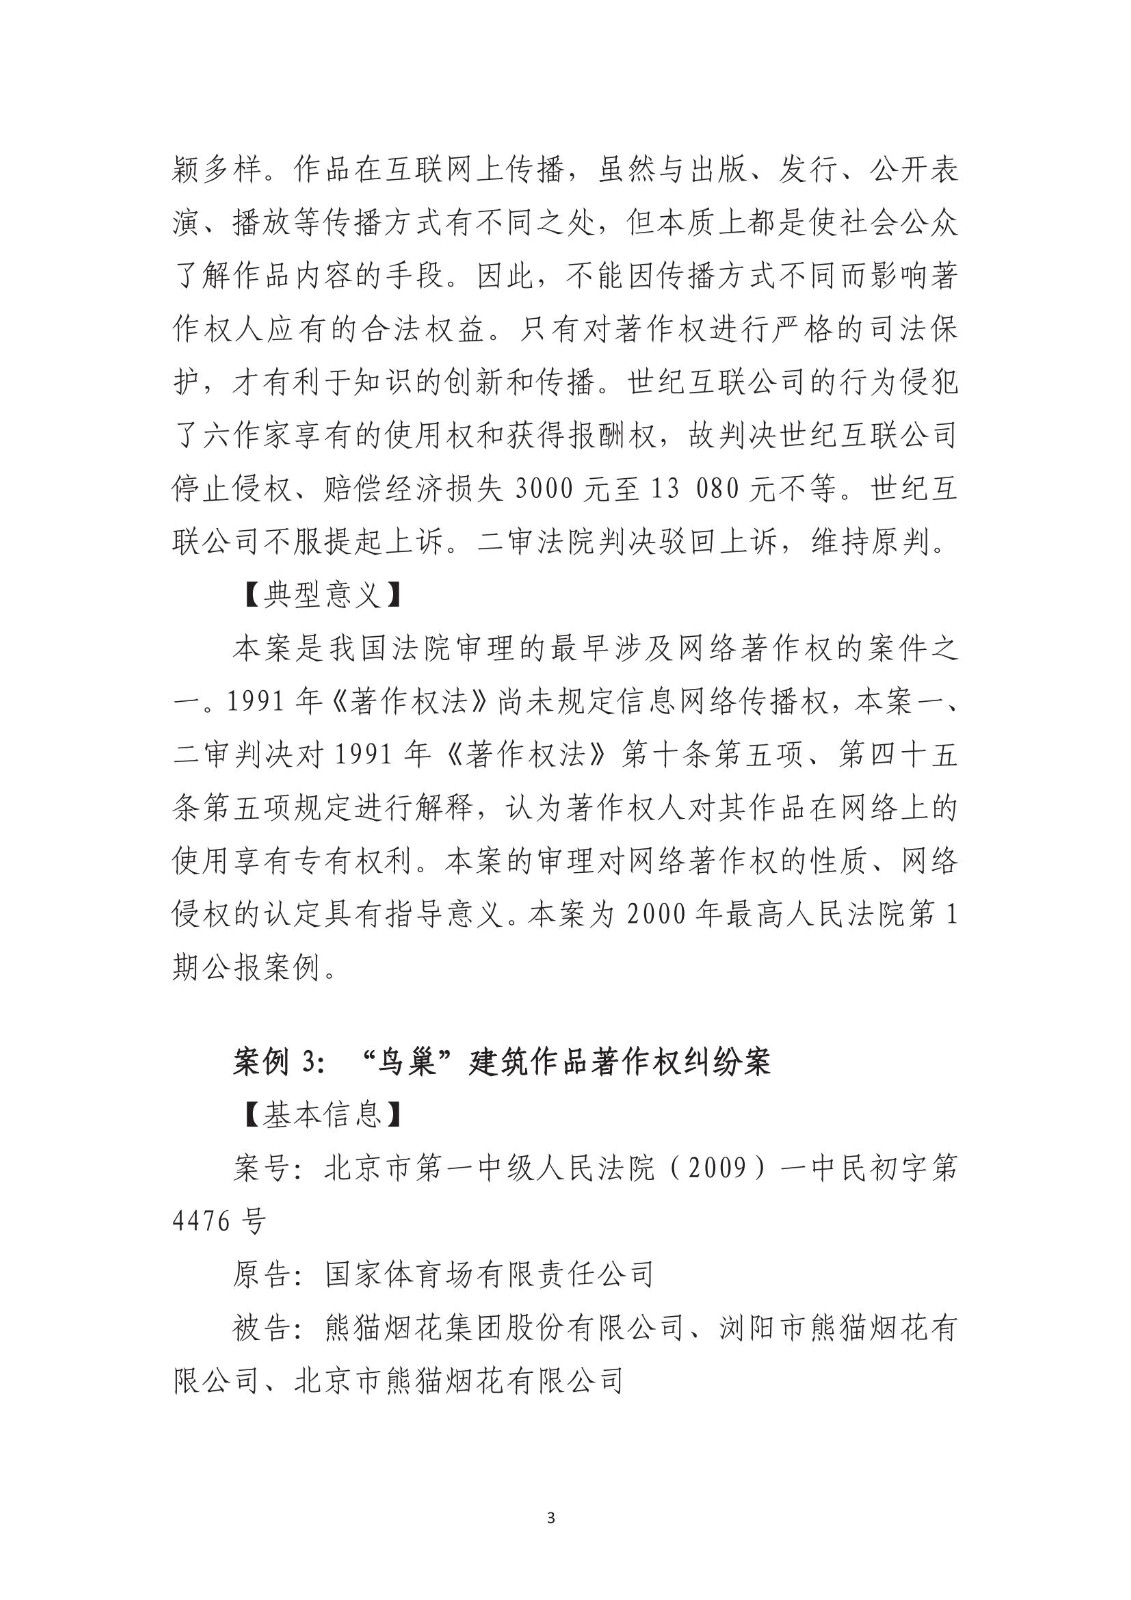 北京法院知识产权专业化审判三十年典型案例（1993-2023）全文发布！